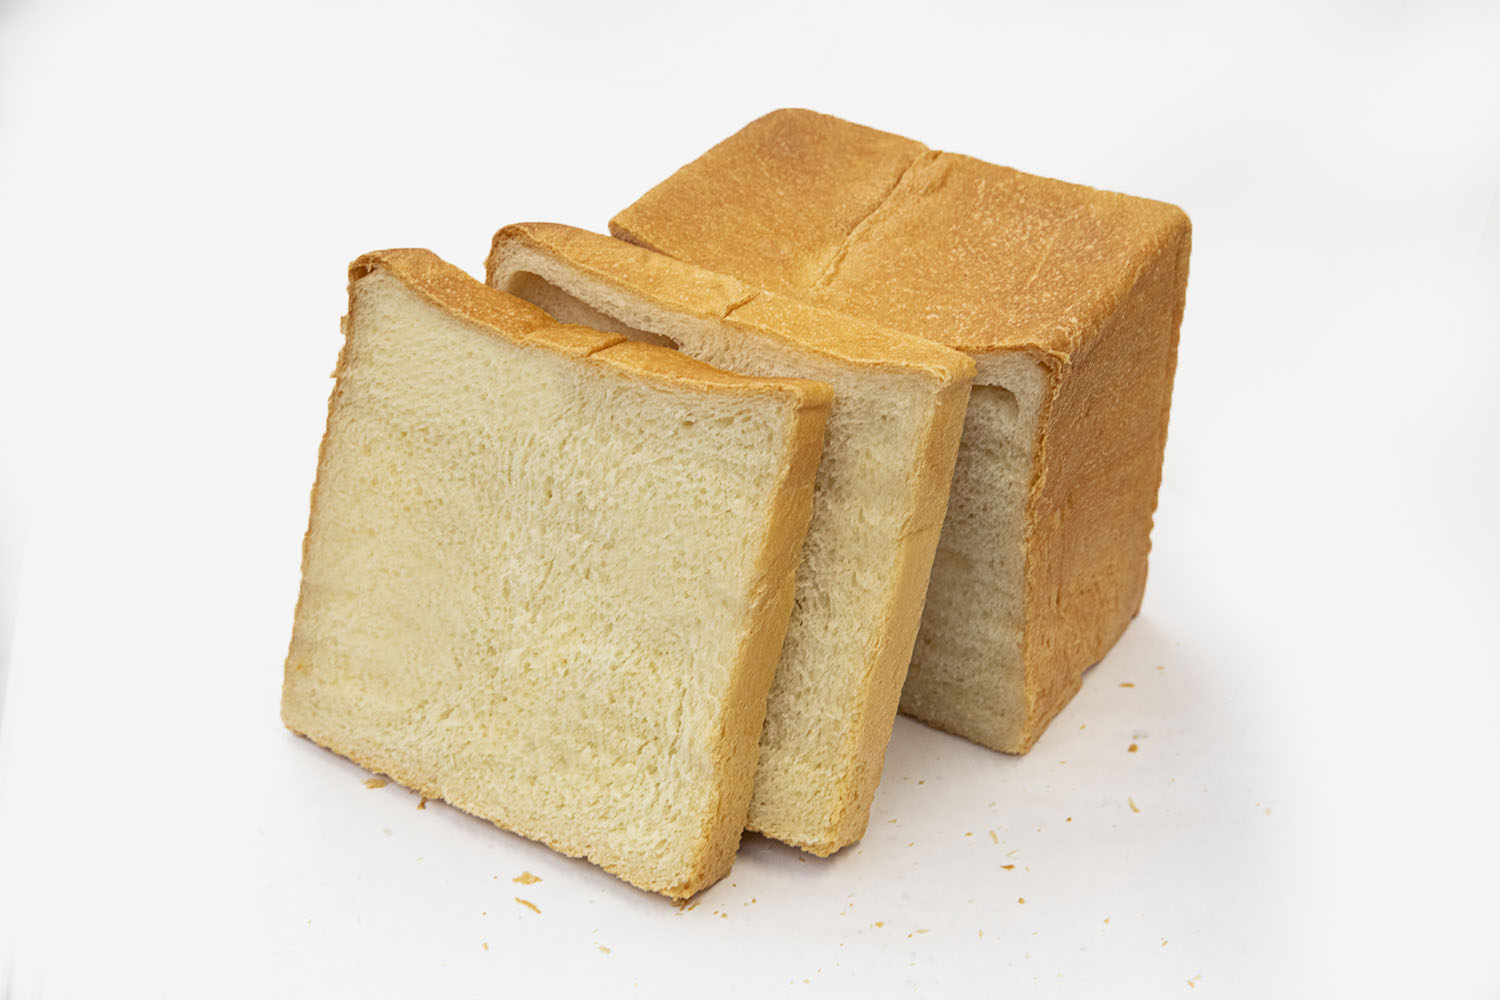 神楽坂生食パン1斤540円。金曜の限定販売。ハチミツ入りの甘めの生地で幅広い年代に人気。